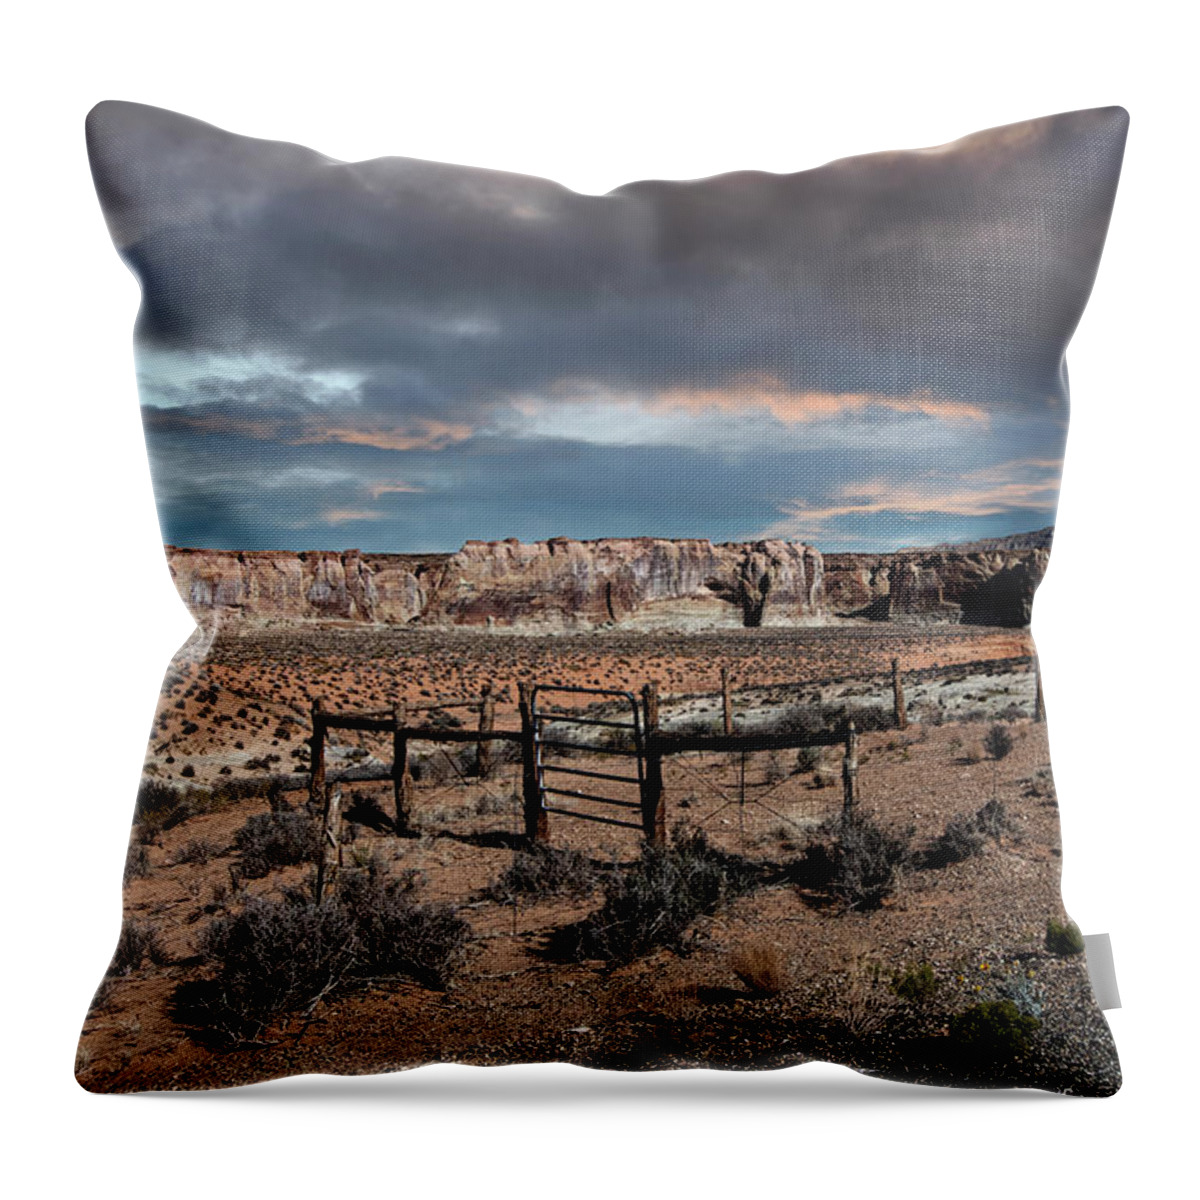 Desert Throw Pillow featuring the photograph Desert Storm by Carmen Kern